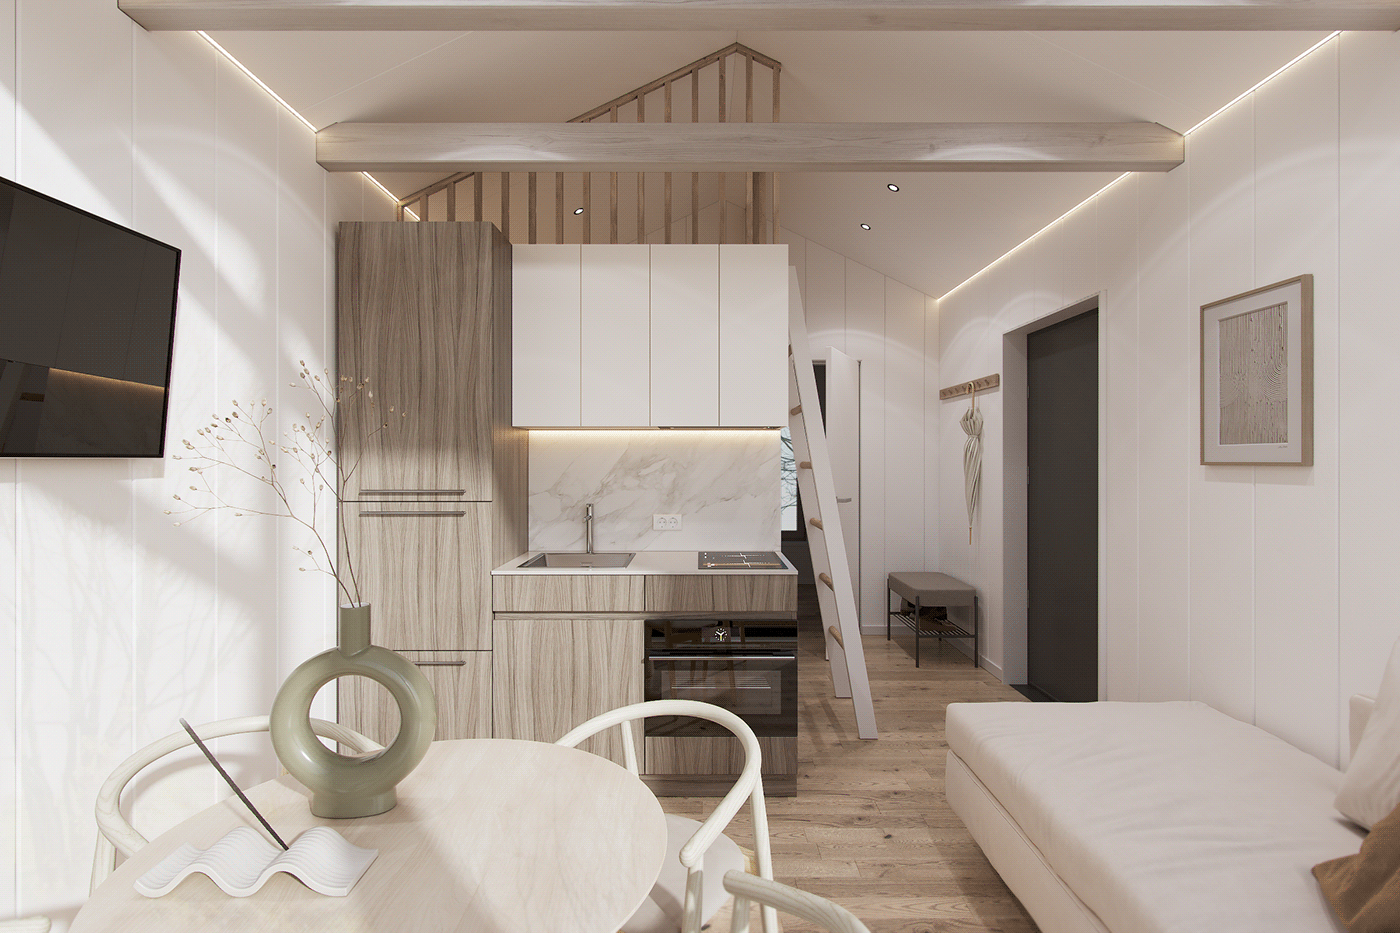 3ds max architecture interior design  Smallhouse Swedish visualization vray